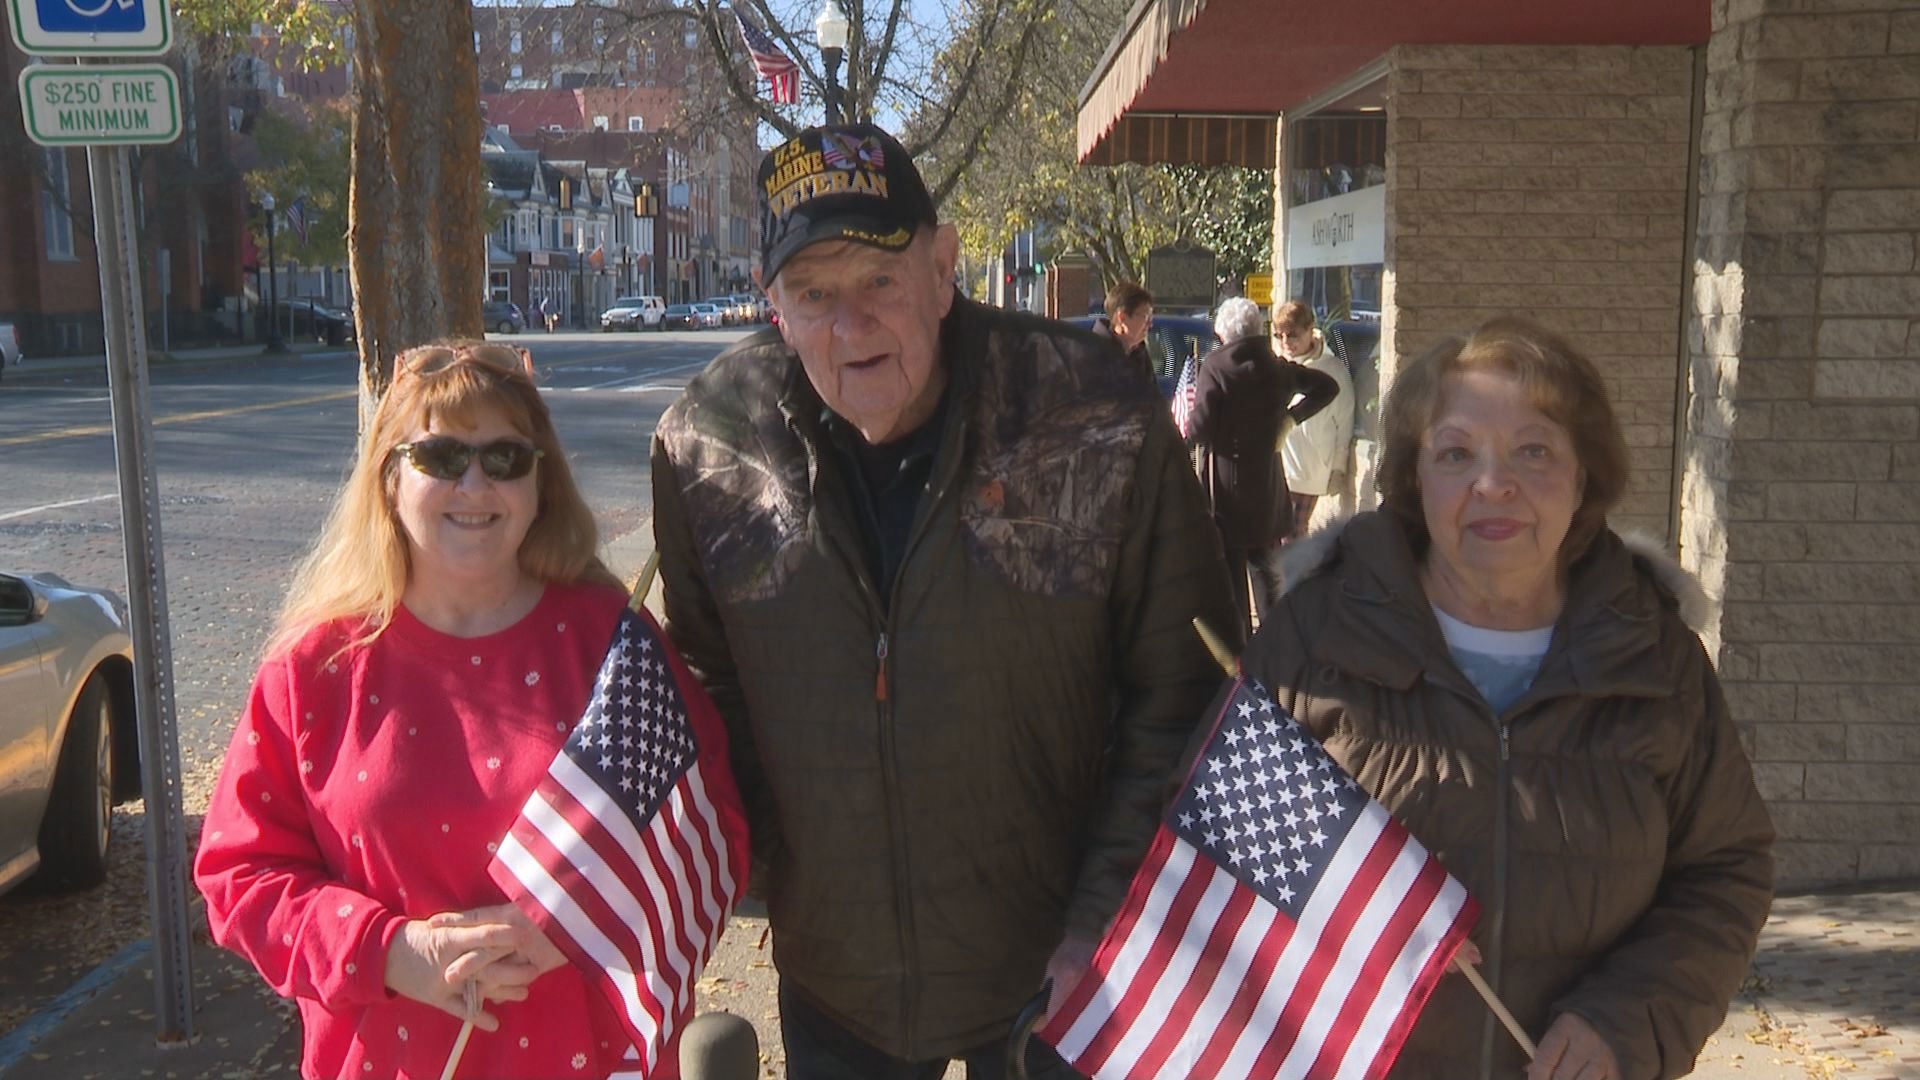 Marietta Veterans Day Parade draws support for veterans